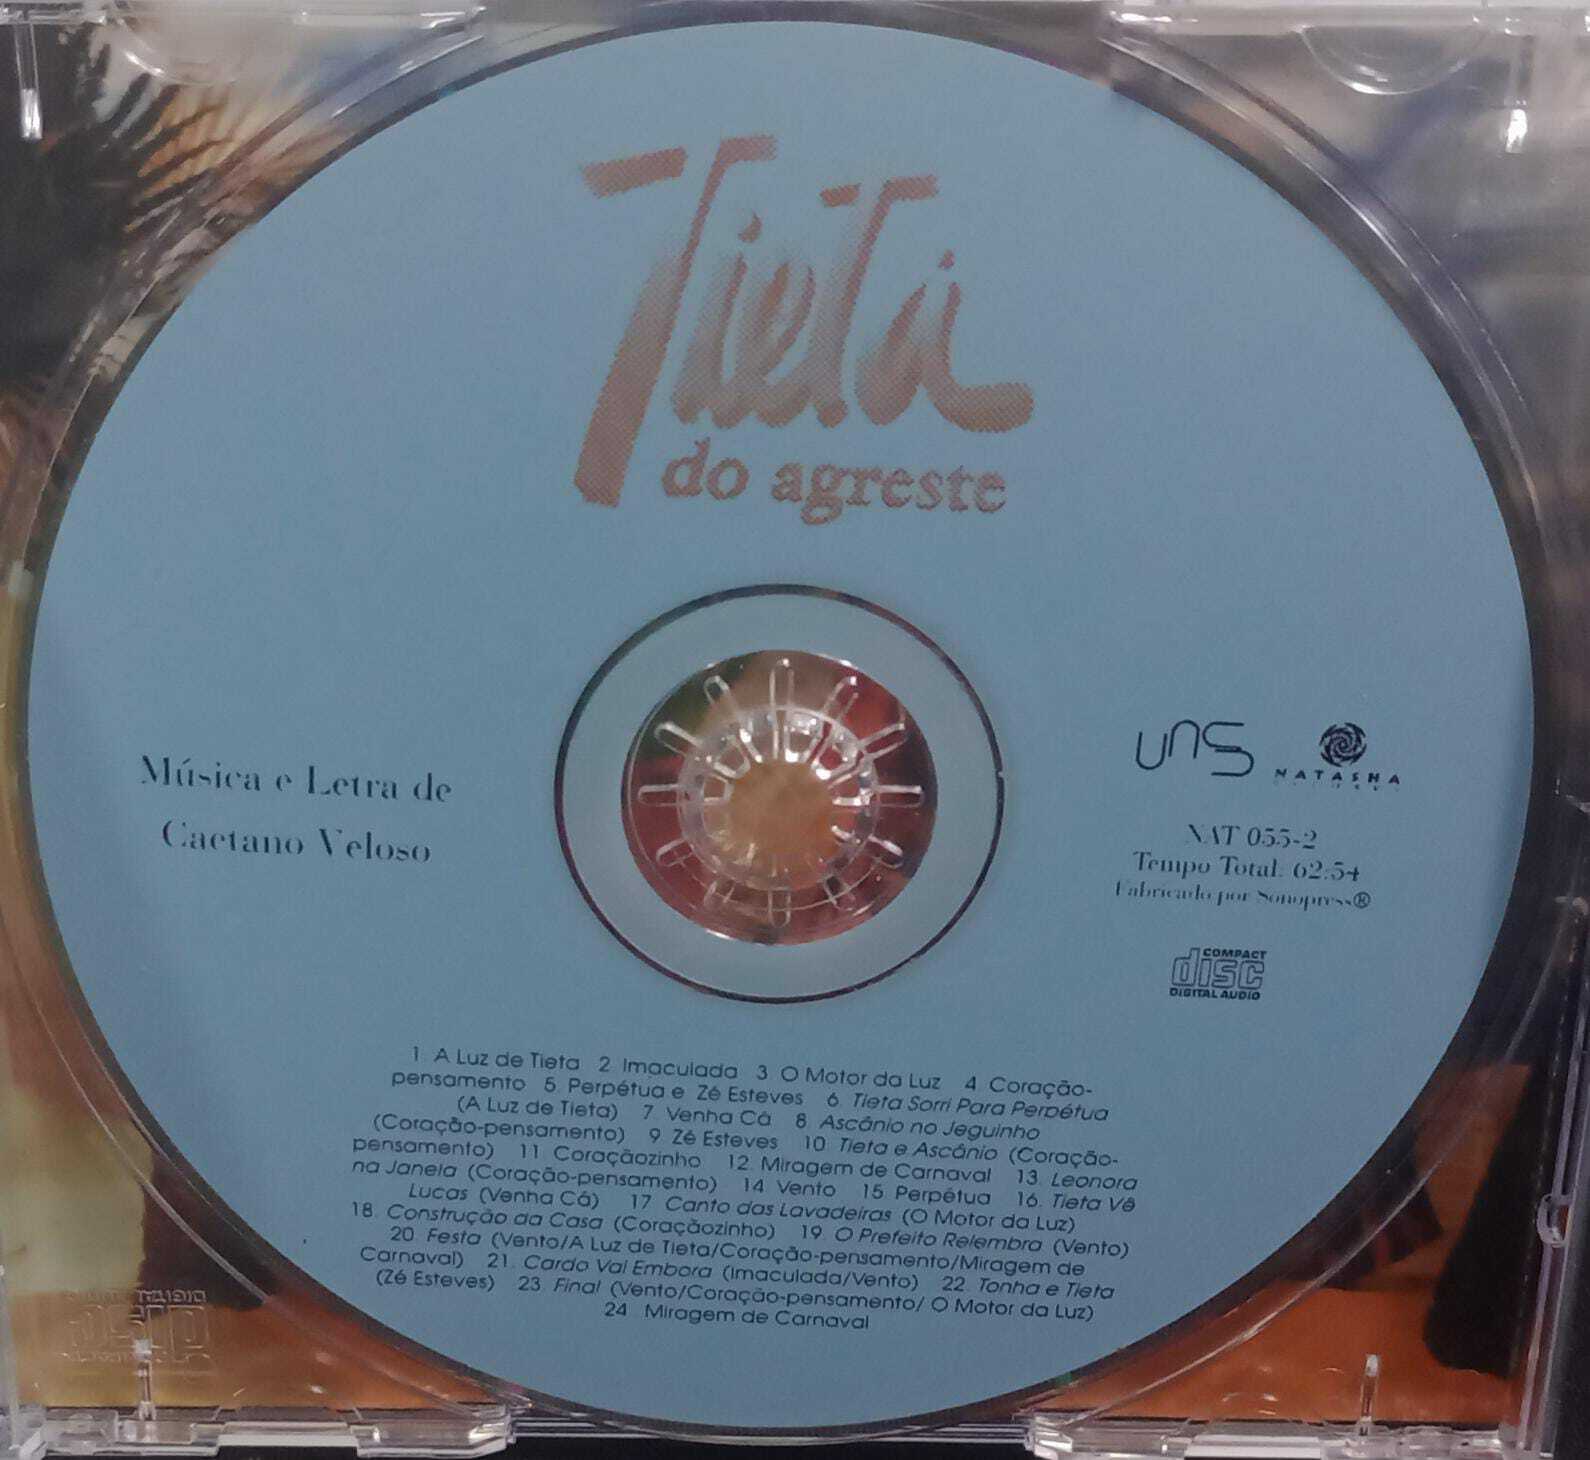 CD - Tieta Do Agreste - Trilha Original de Caetano Veloso